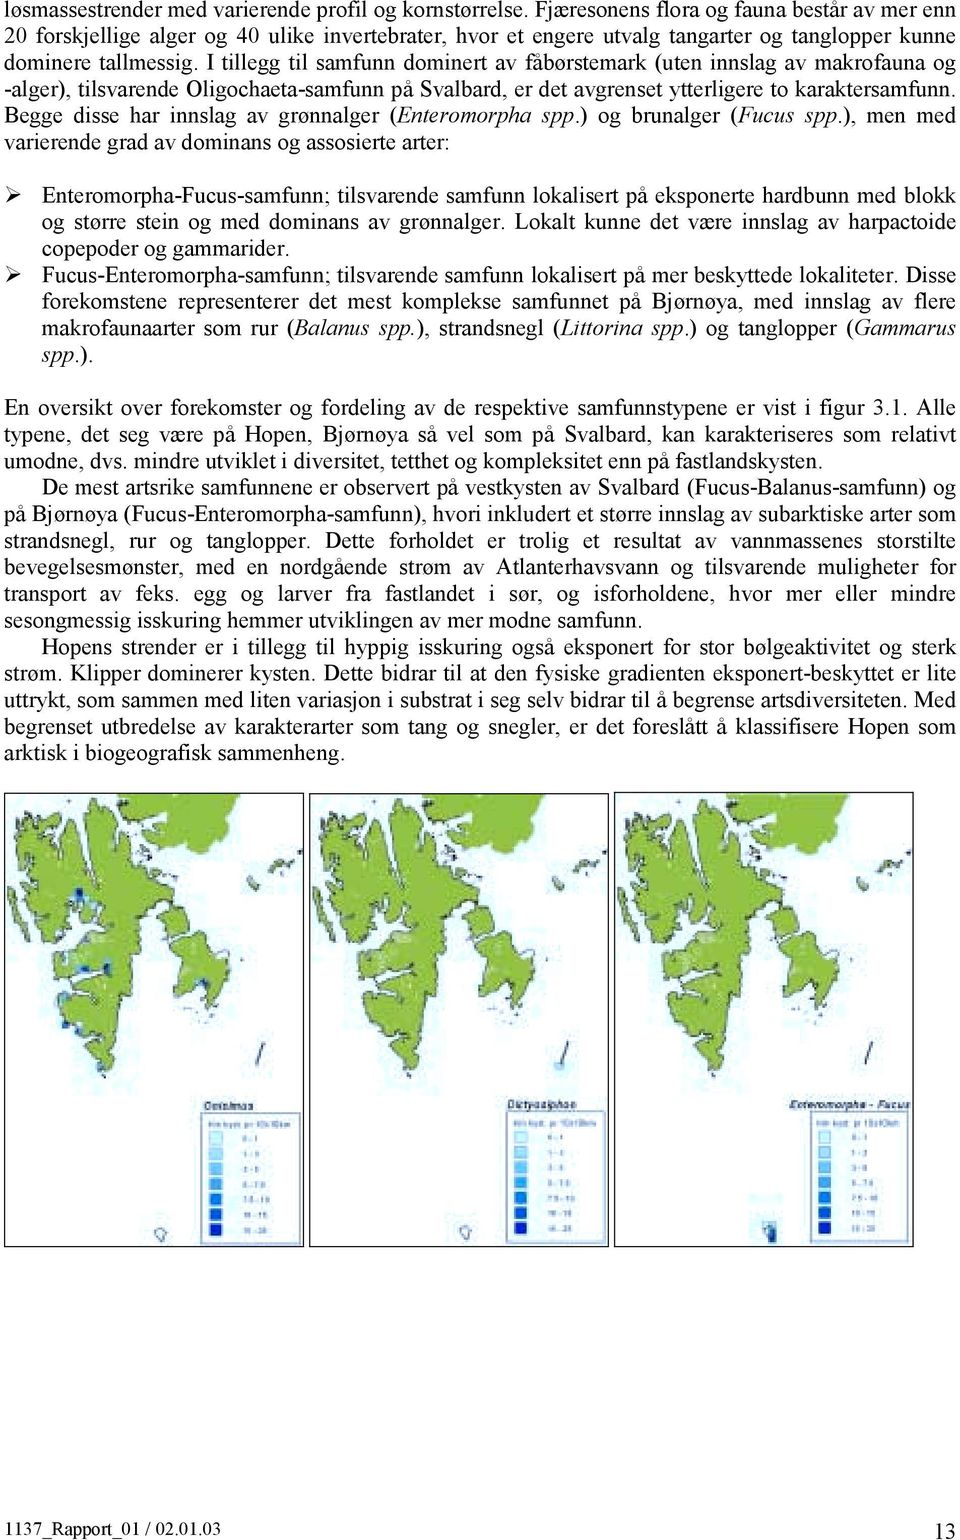 I tillegg til samfunn dominert av fåbørstemark (uten innslag av makrofauna og -alger), tilsvarende Oligochaeta-samfunn på Svalbard, er det avgrenset ytterligere to karaktersamfunn.